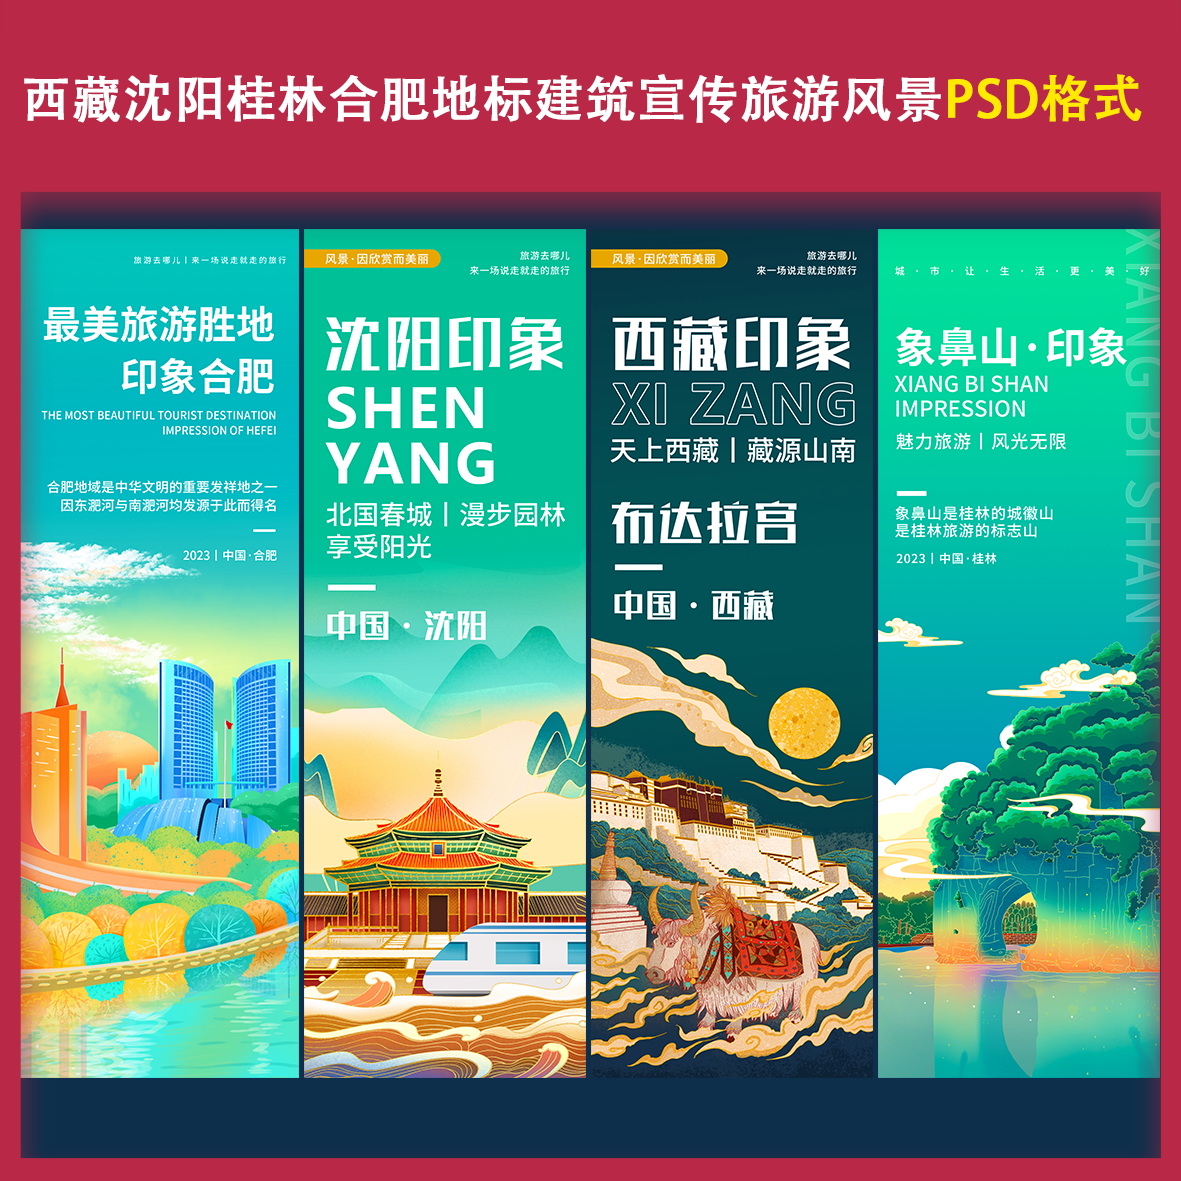 h4西藏沈阳桂林合肥地标建筑宣传旅游风景ps宣传海报主视觉素材文